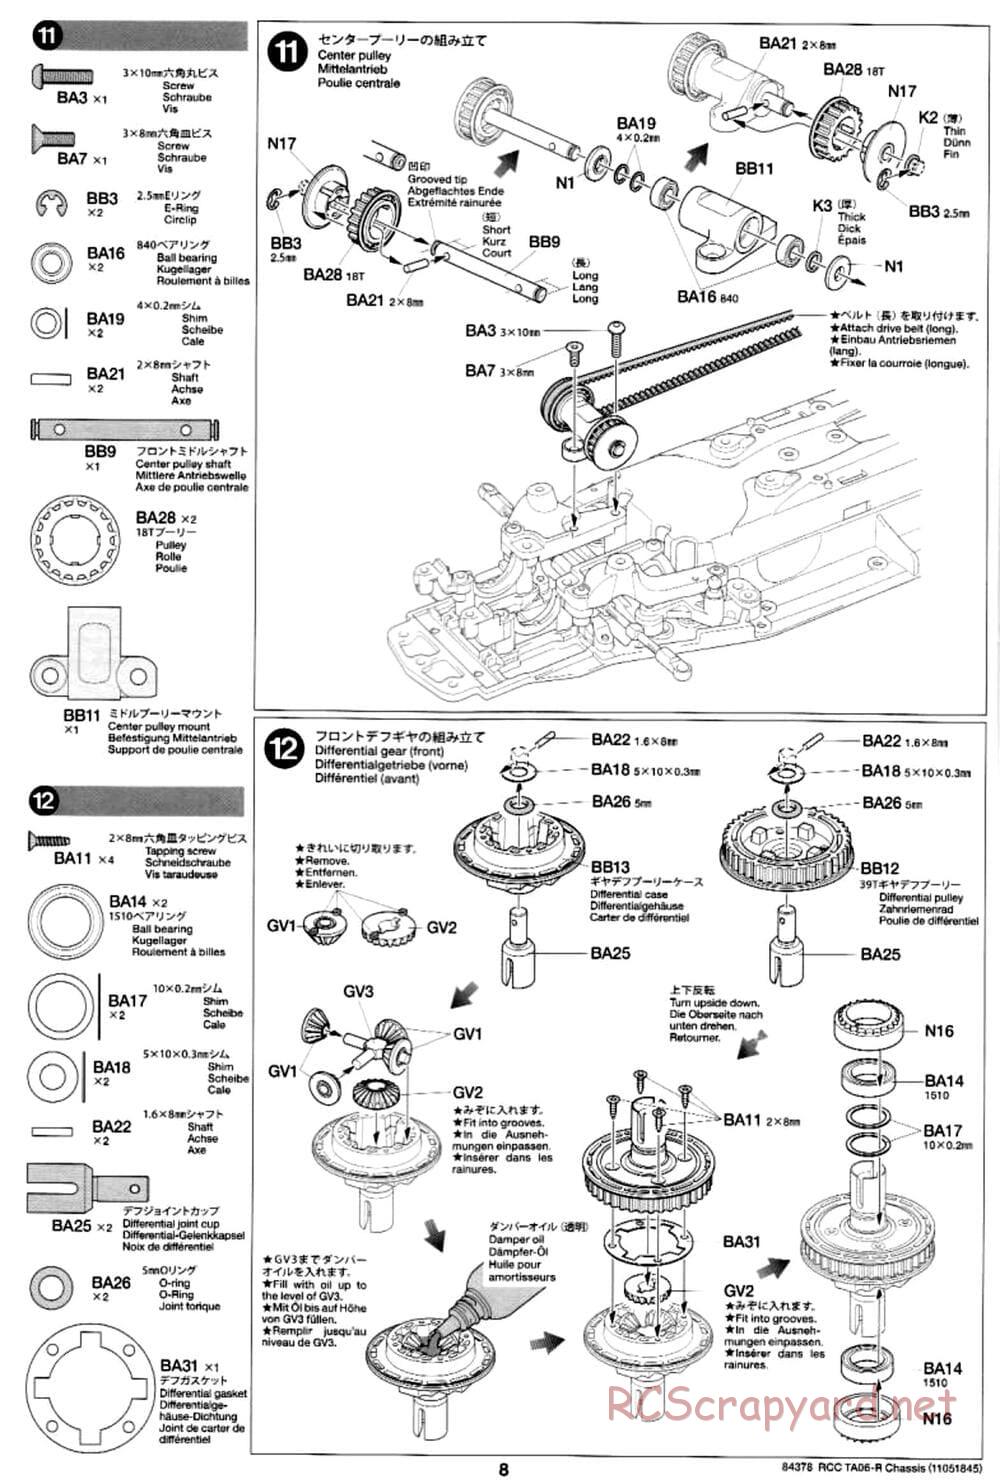 Tamiya - TA06-R Chassis - Manual - Page 8